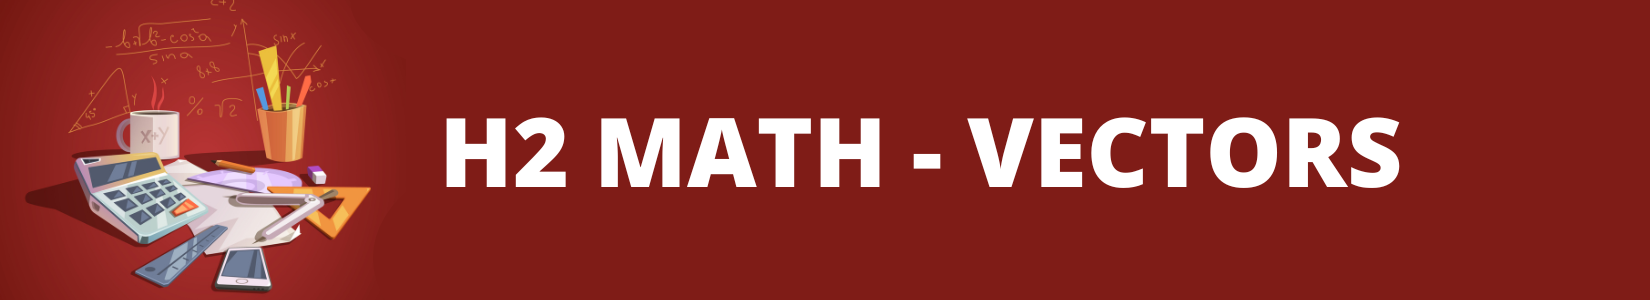 H2 Maths- Vectors